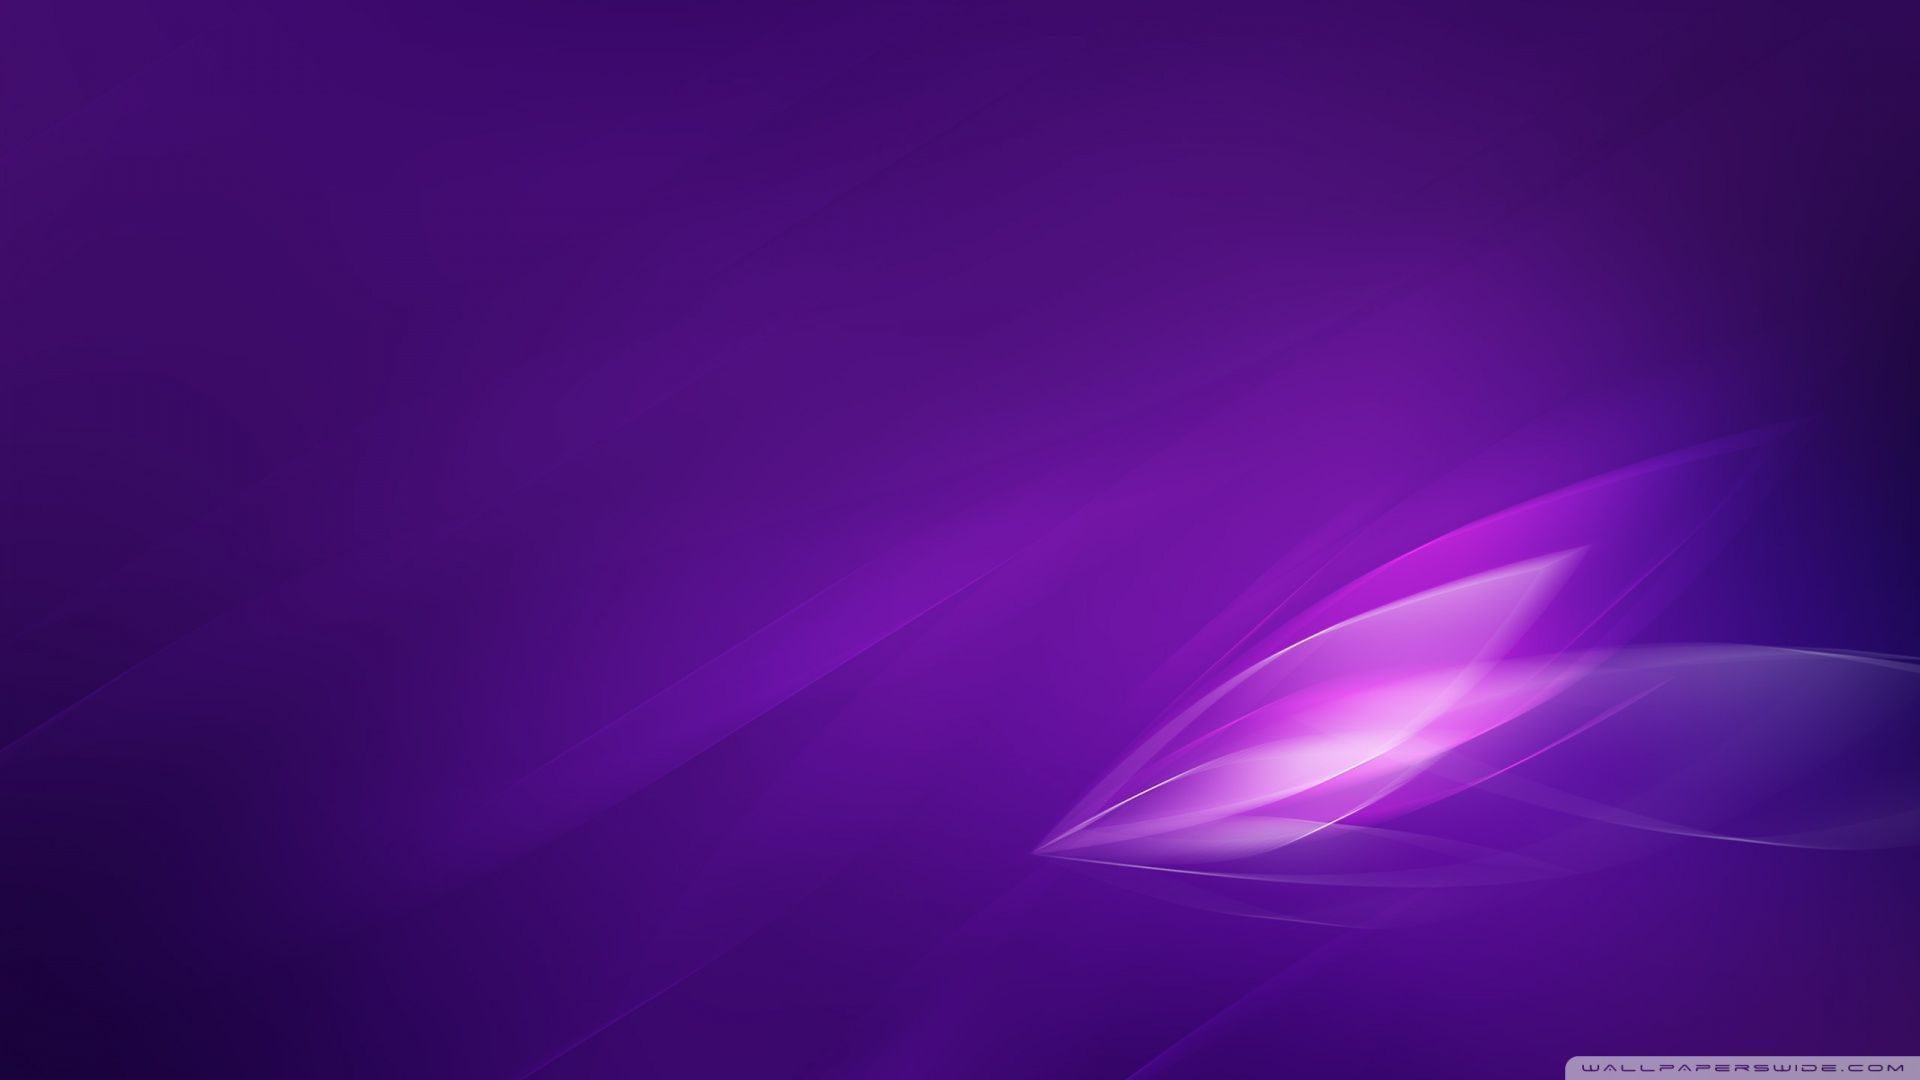 Purple Wallpaper - Colors Wallpaper 34511589 - Fanpop